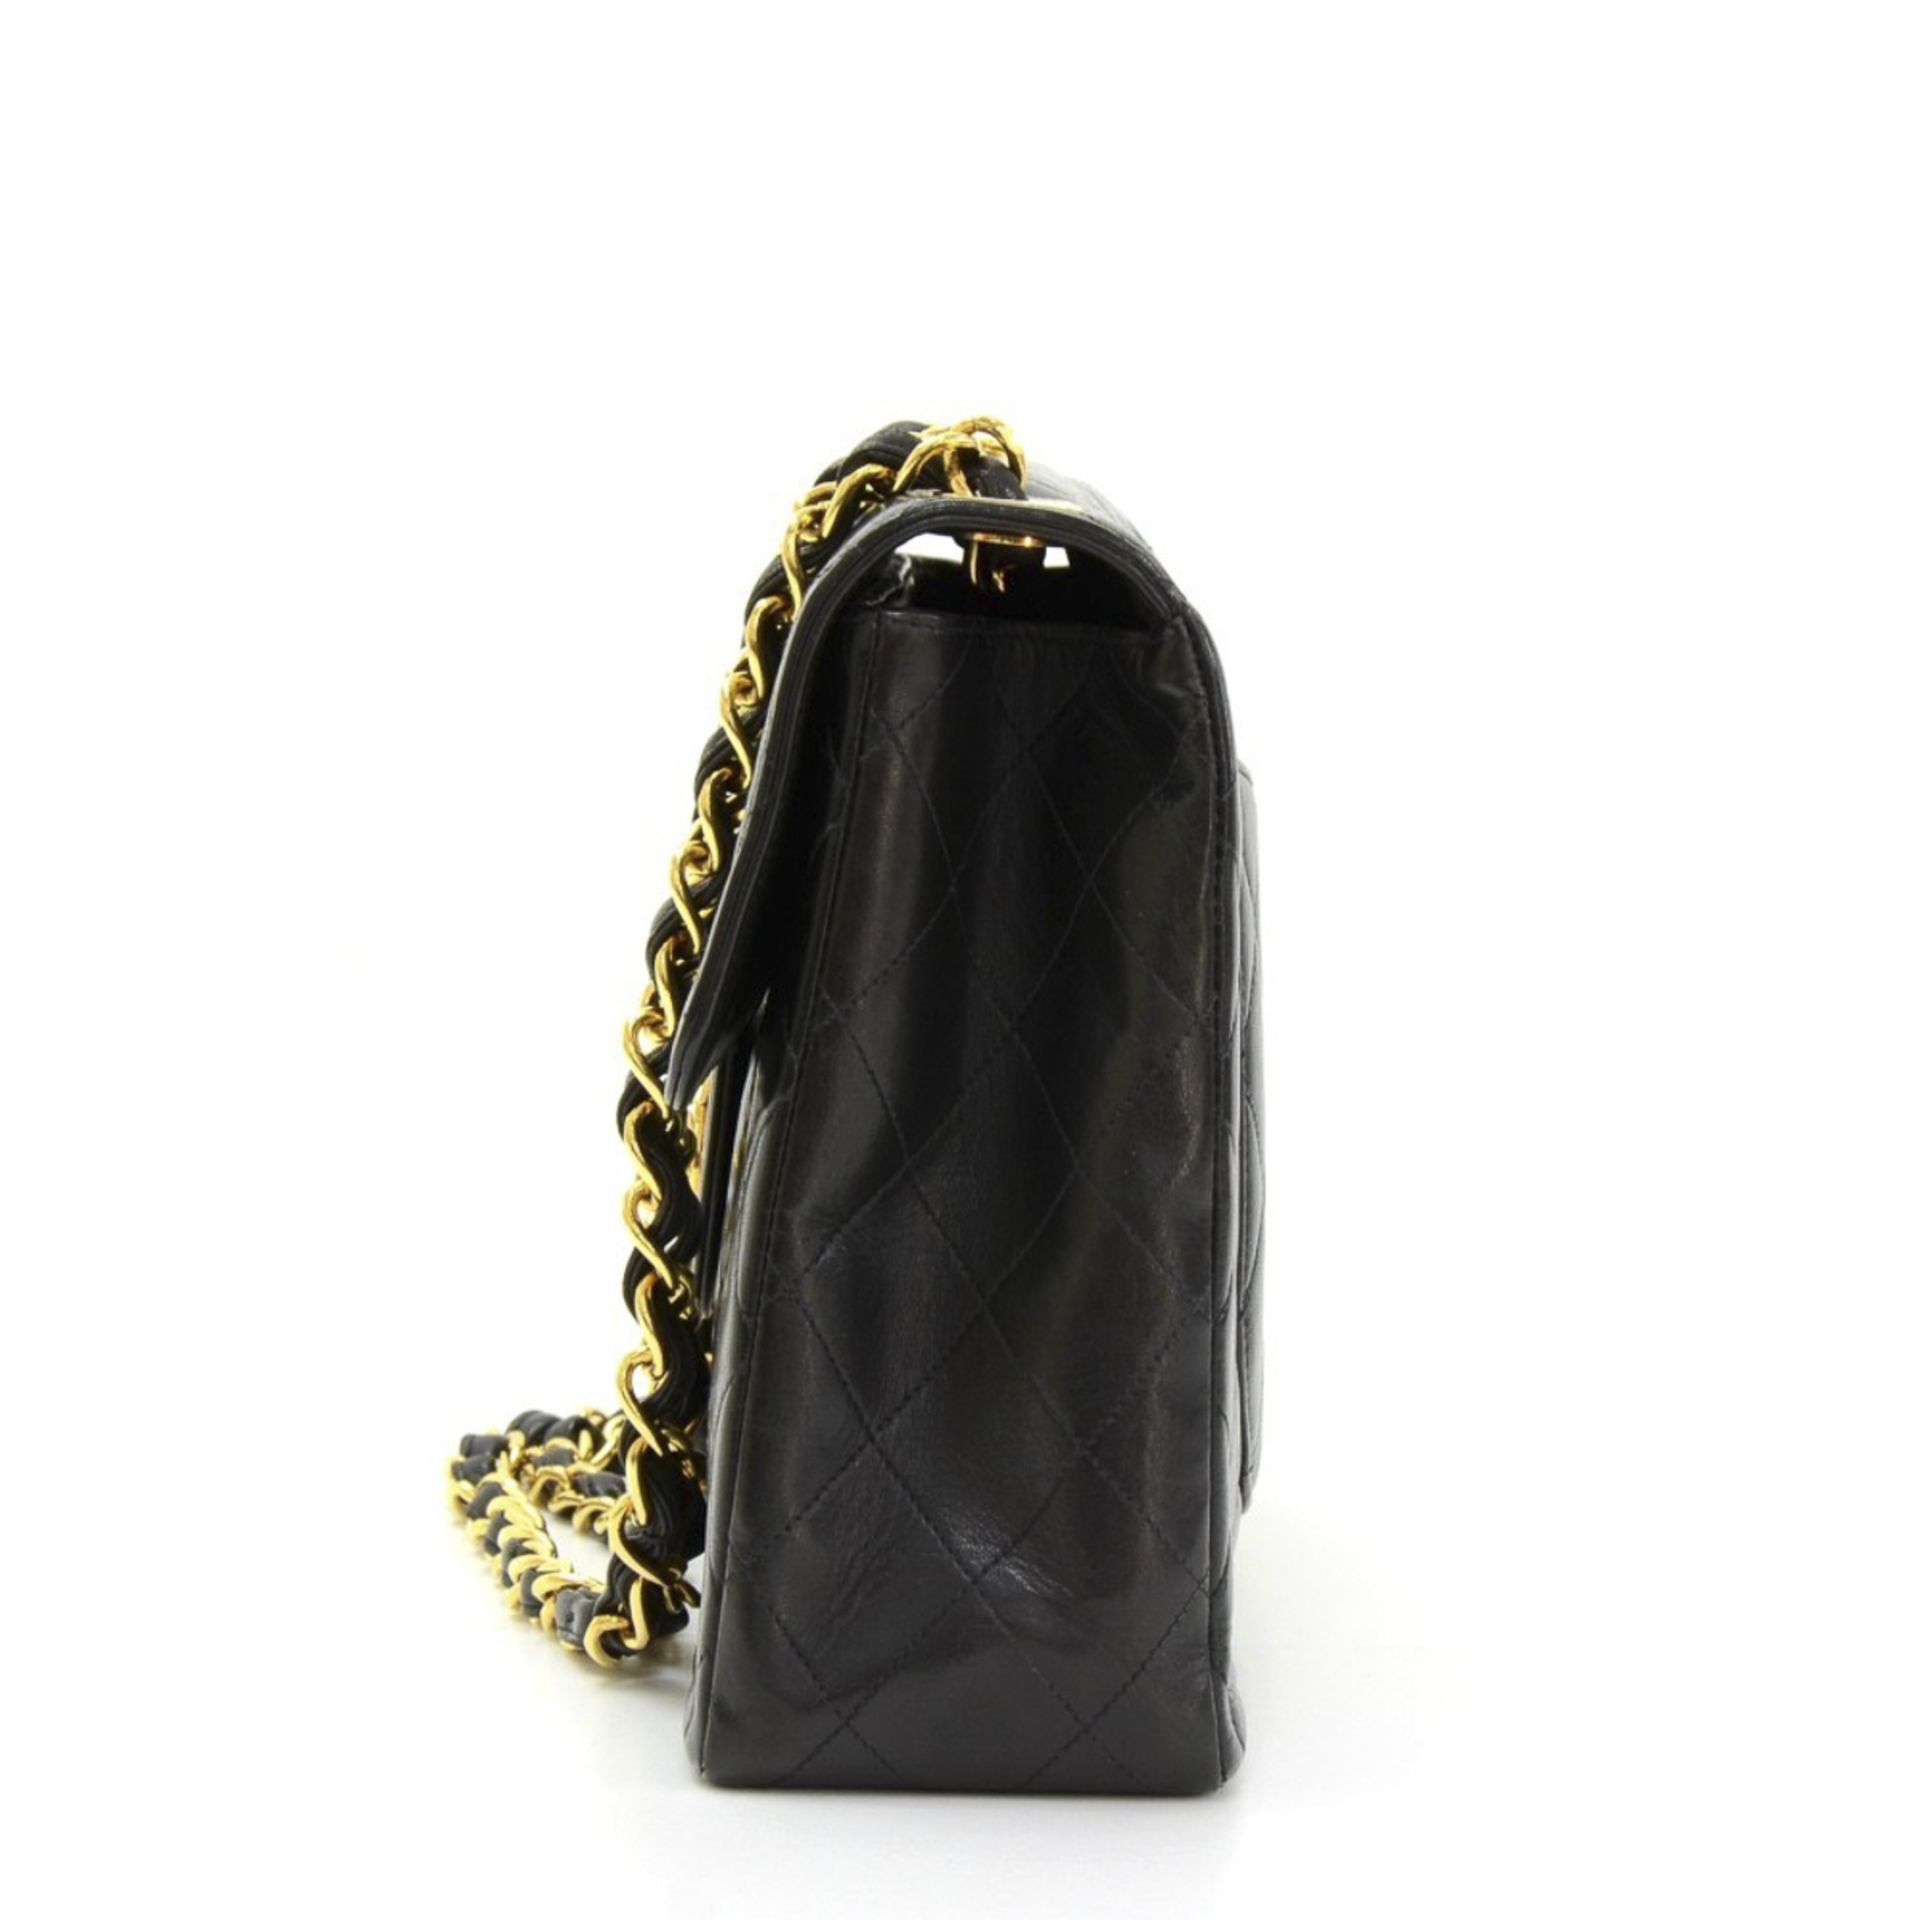 Chanel, Jumbo XL Flap Bag - Image 3 of 12